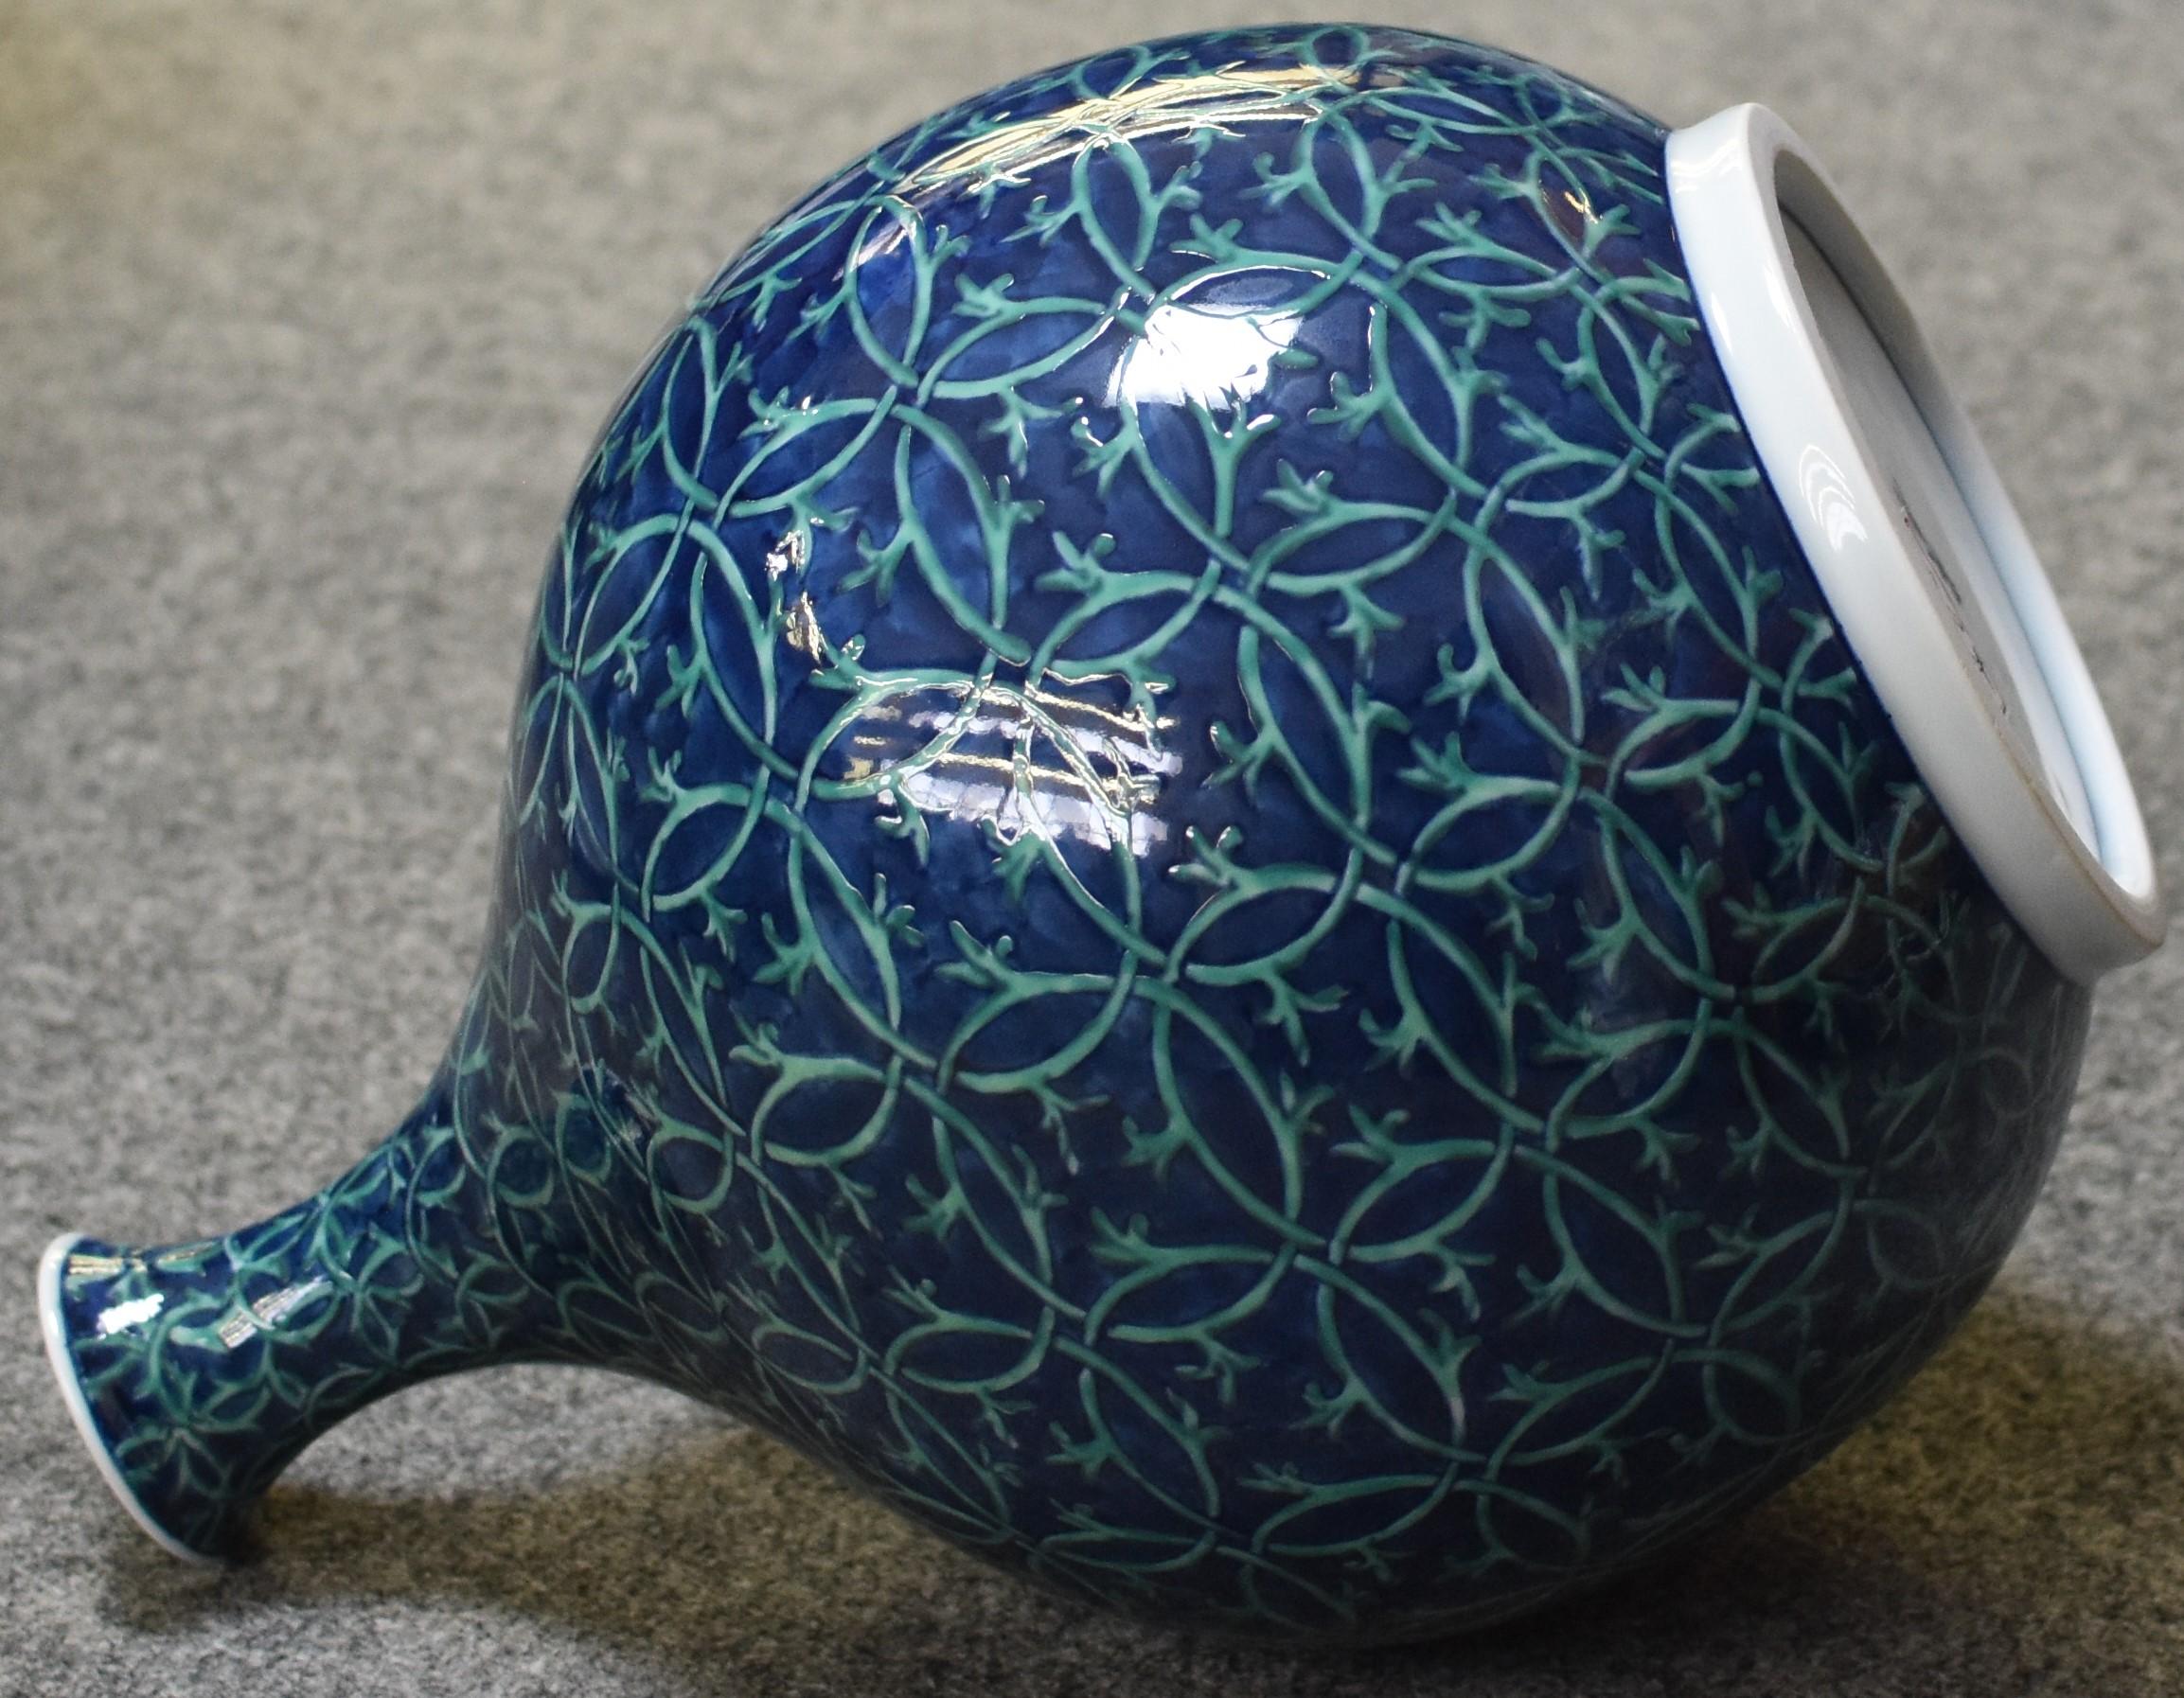 Zeitgenössische japanische Vase aus signiertem Imari-Porzellan, handbemalt in tiefem Blau und Grün auf einem schönen flaschenförmigen Korpus, das Werk eines hochgelobten, preisgekrönten Porzellanmeisters der dritten Generation aus der